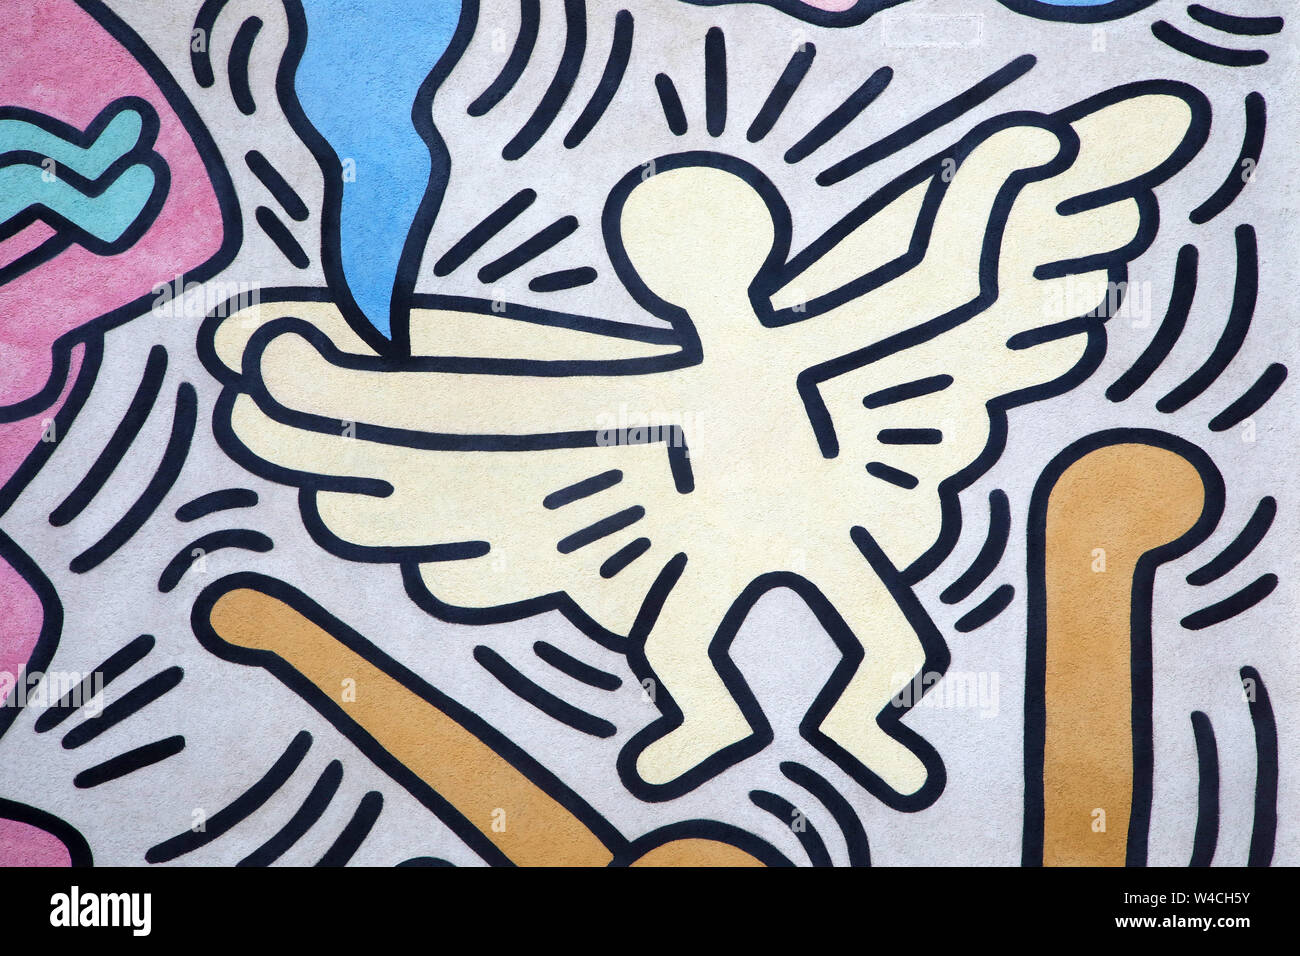 Angel peinte par Keith Haring. Détail d'une grande oeuvre d'art (appelé Tuttomondo) peint à Pise, Italie, en 1989. Banque D'Images